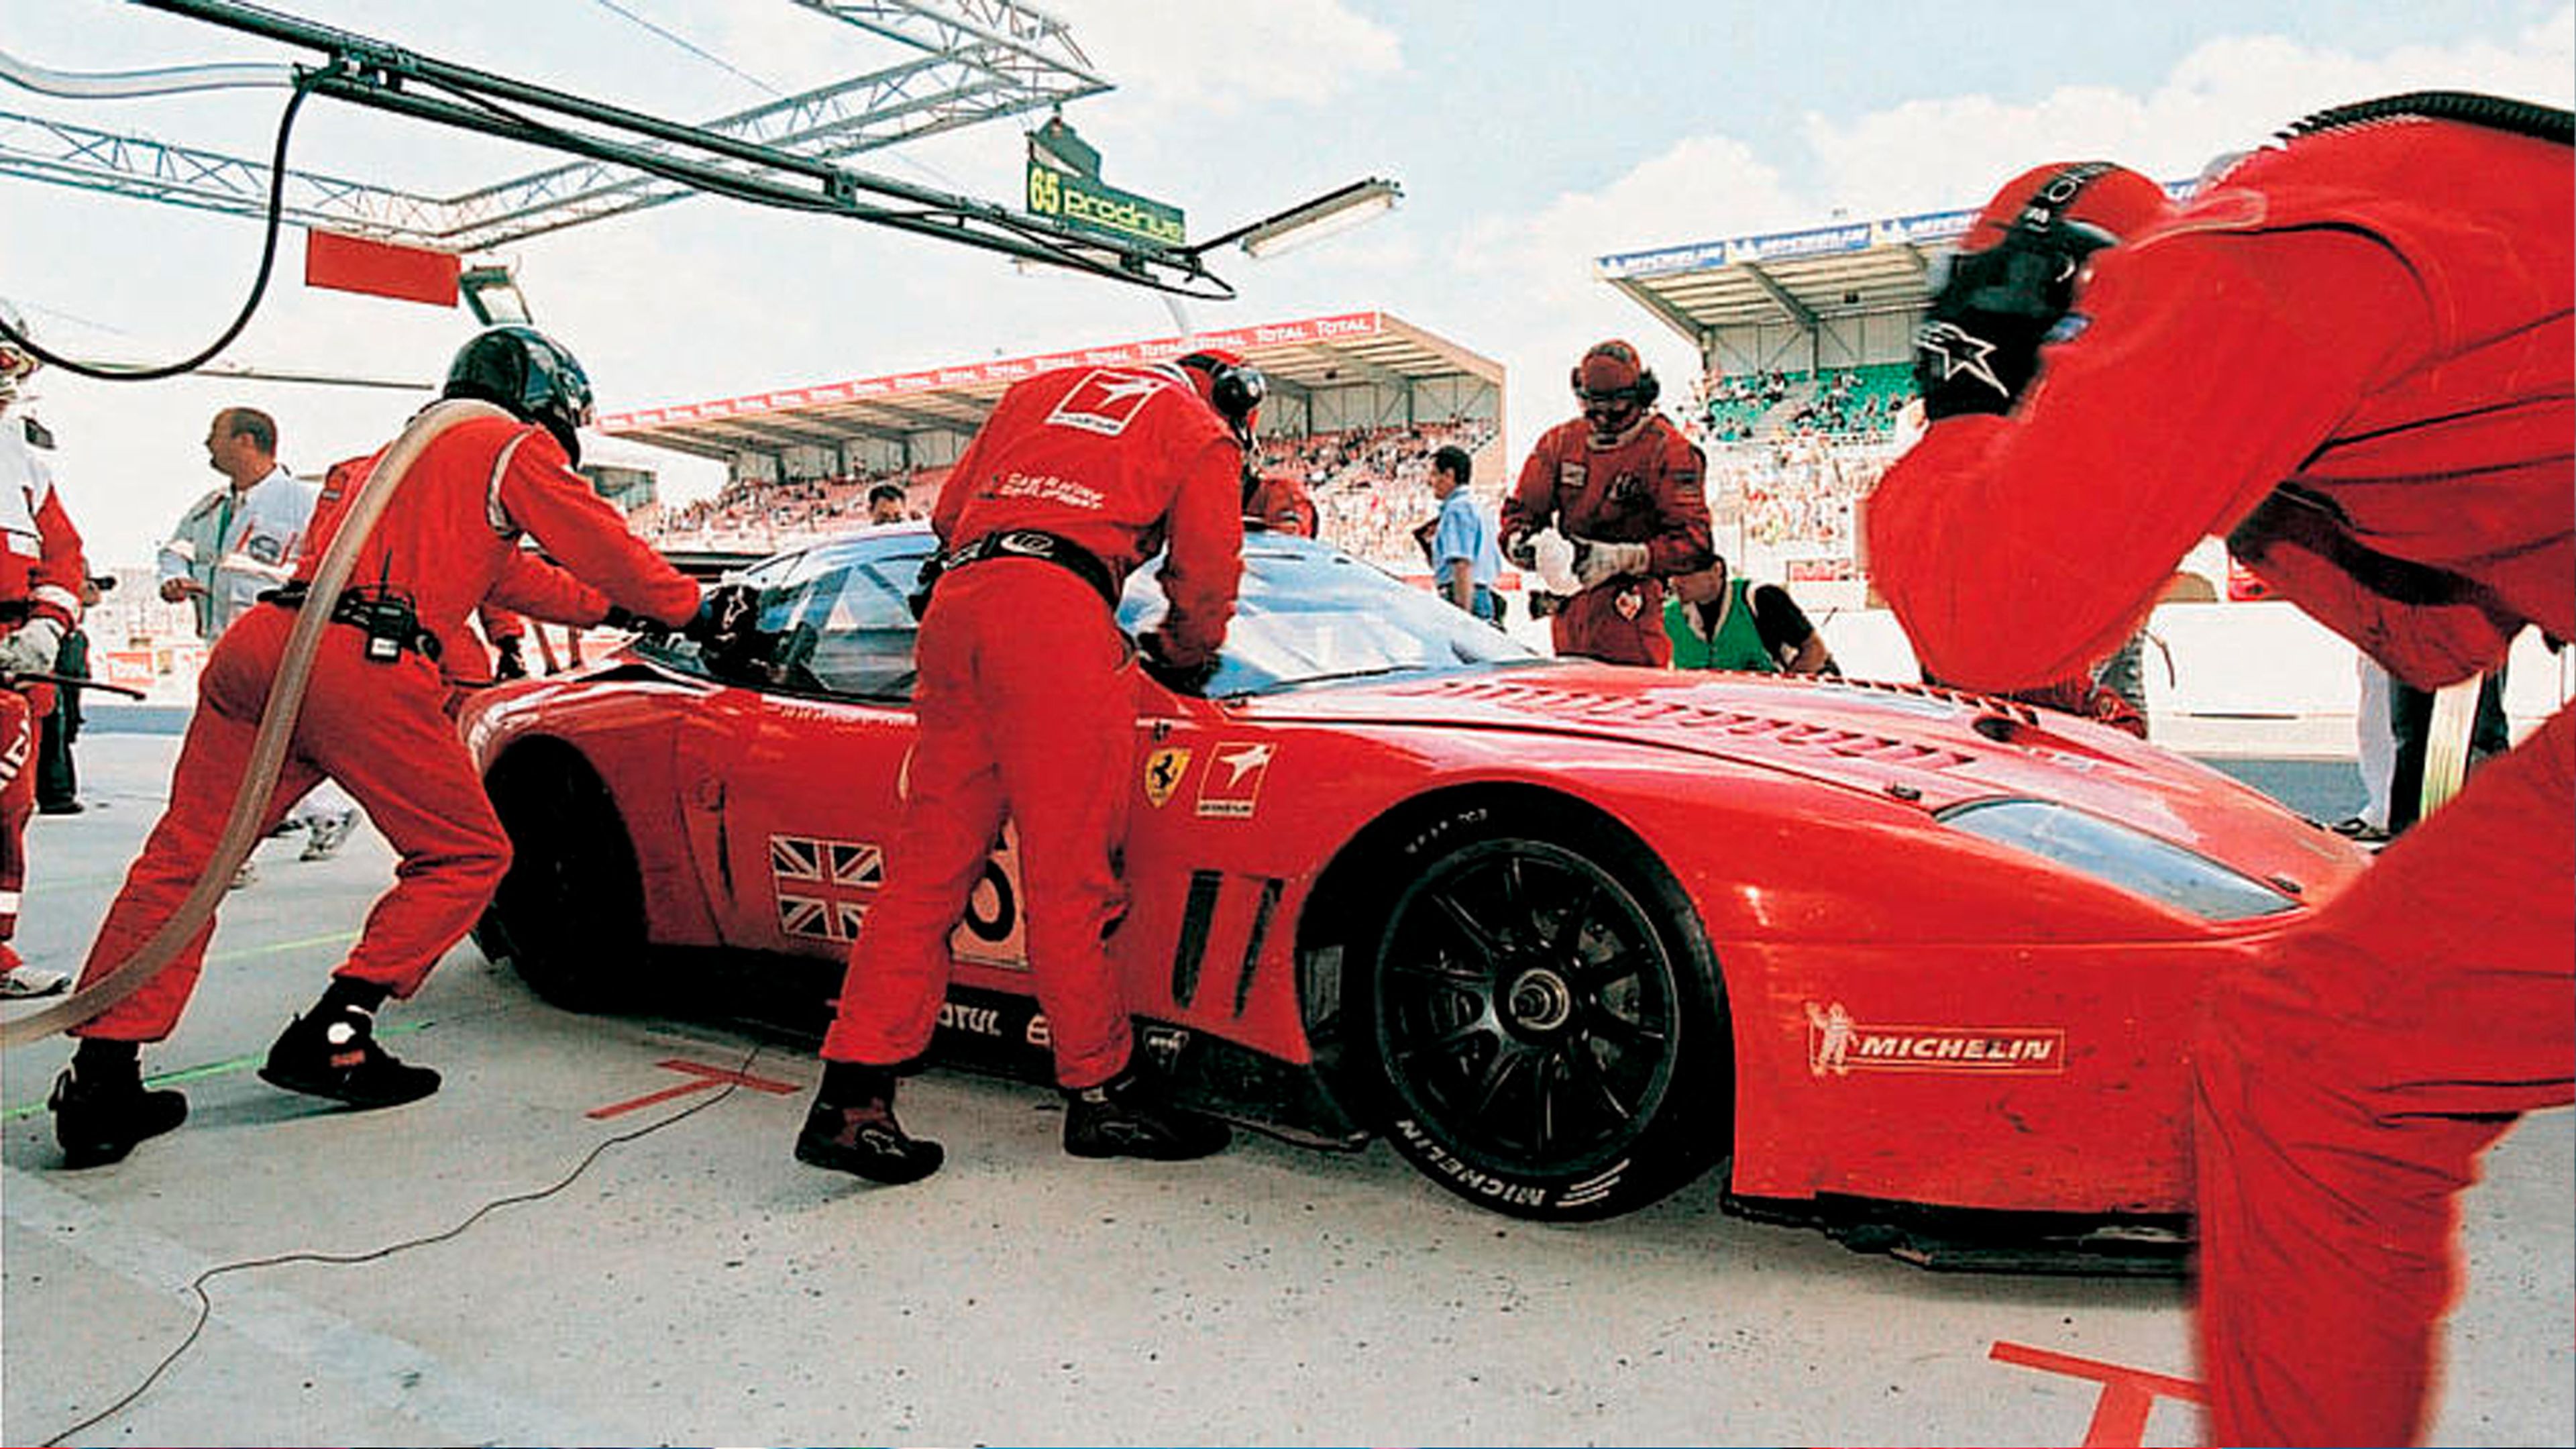 Parada en boxes del Ferrari 550 de Colin McRae en las 24 Horas de Le Mans.